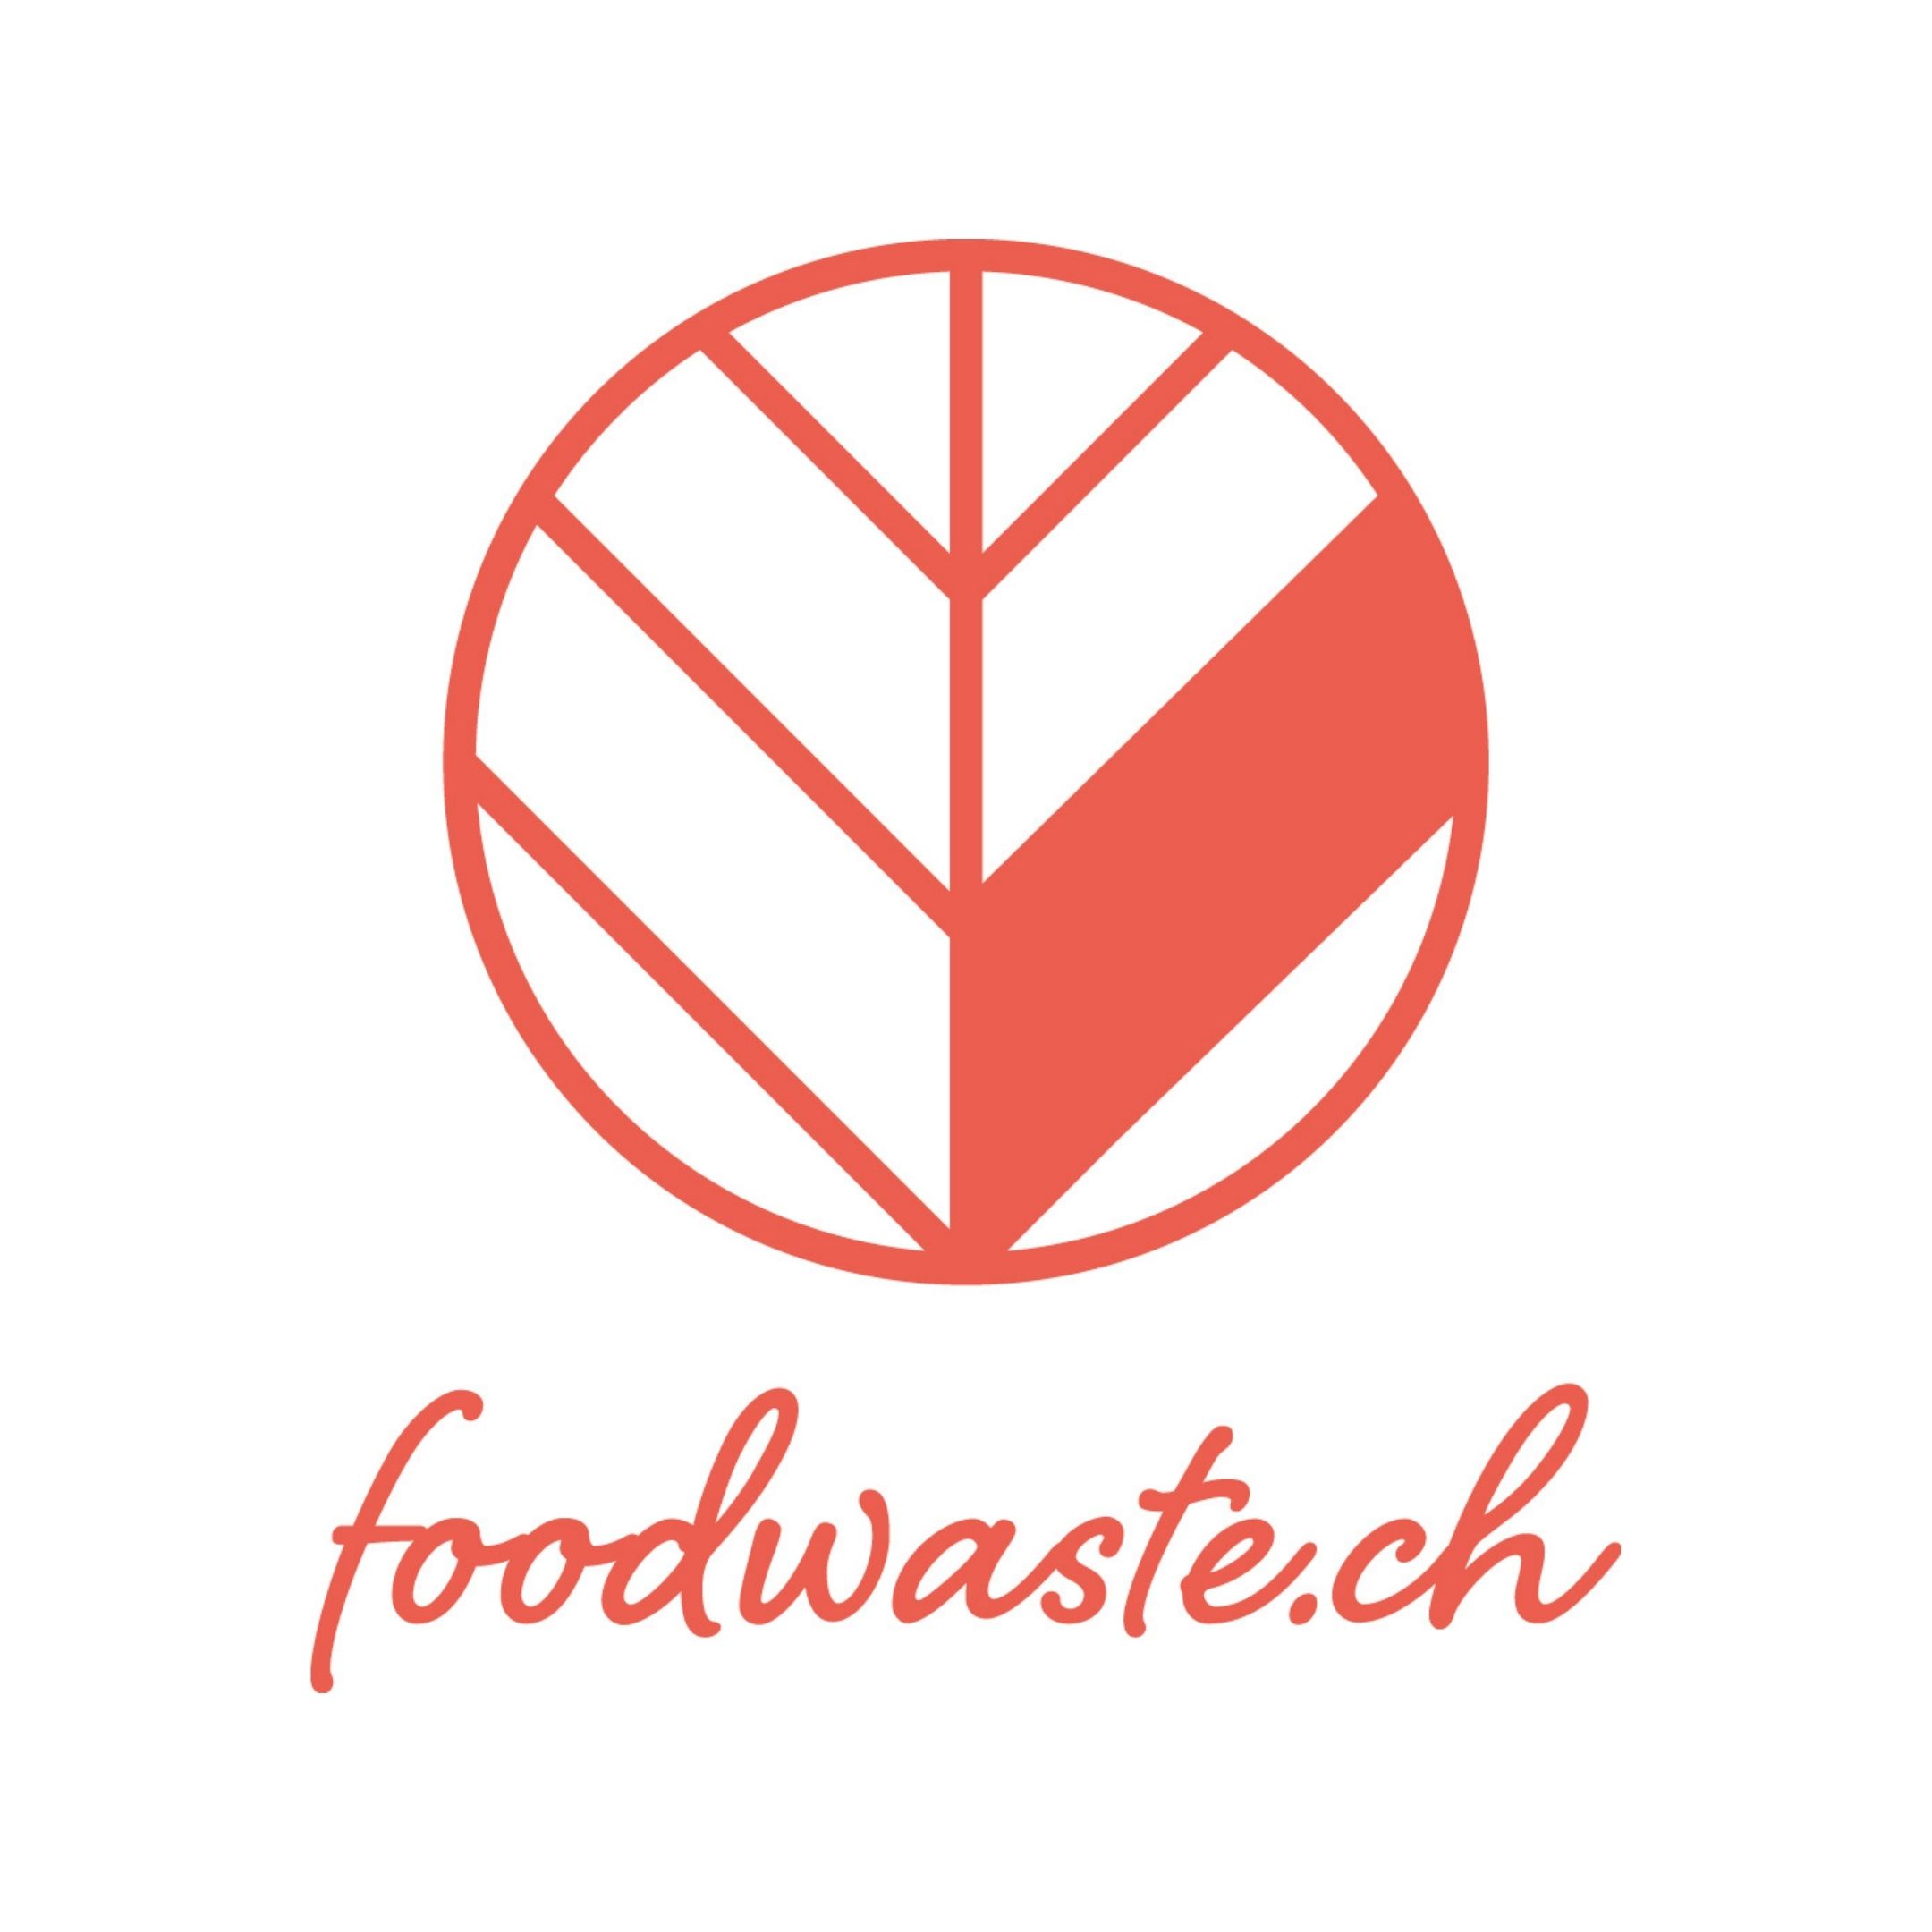 Foodwaste.ch